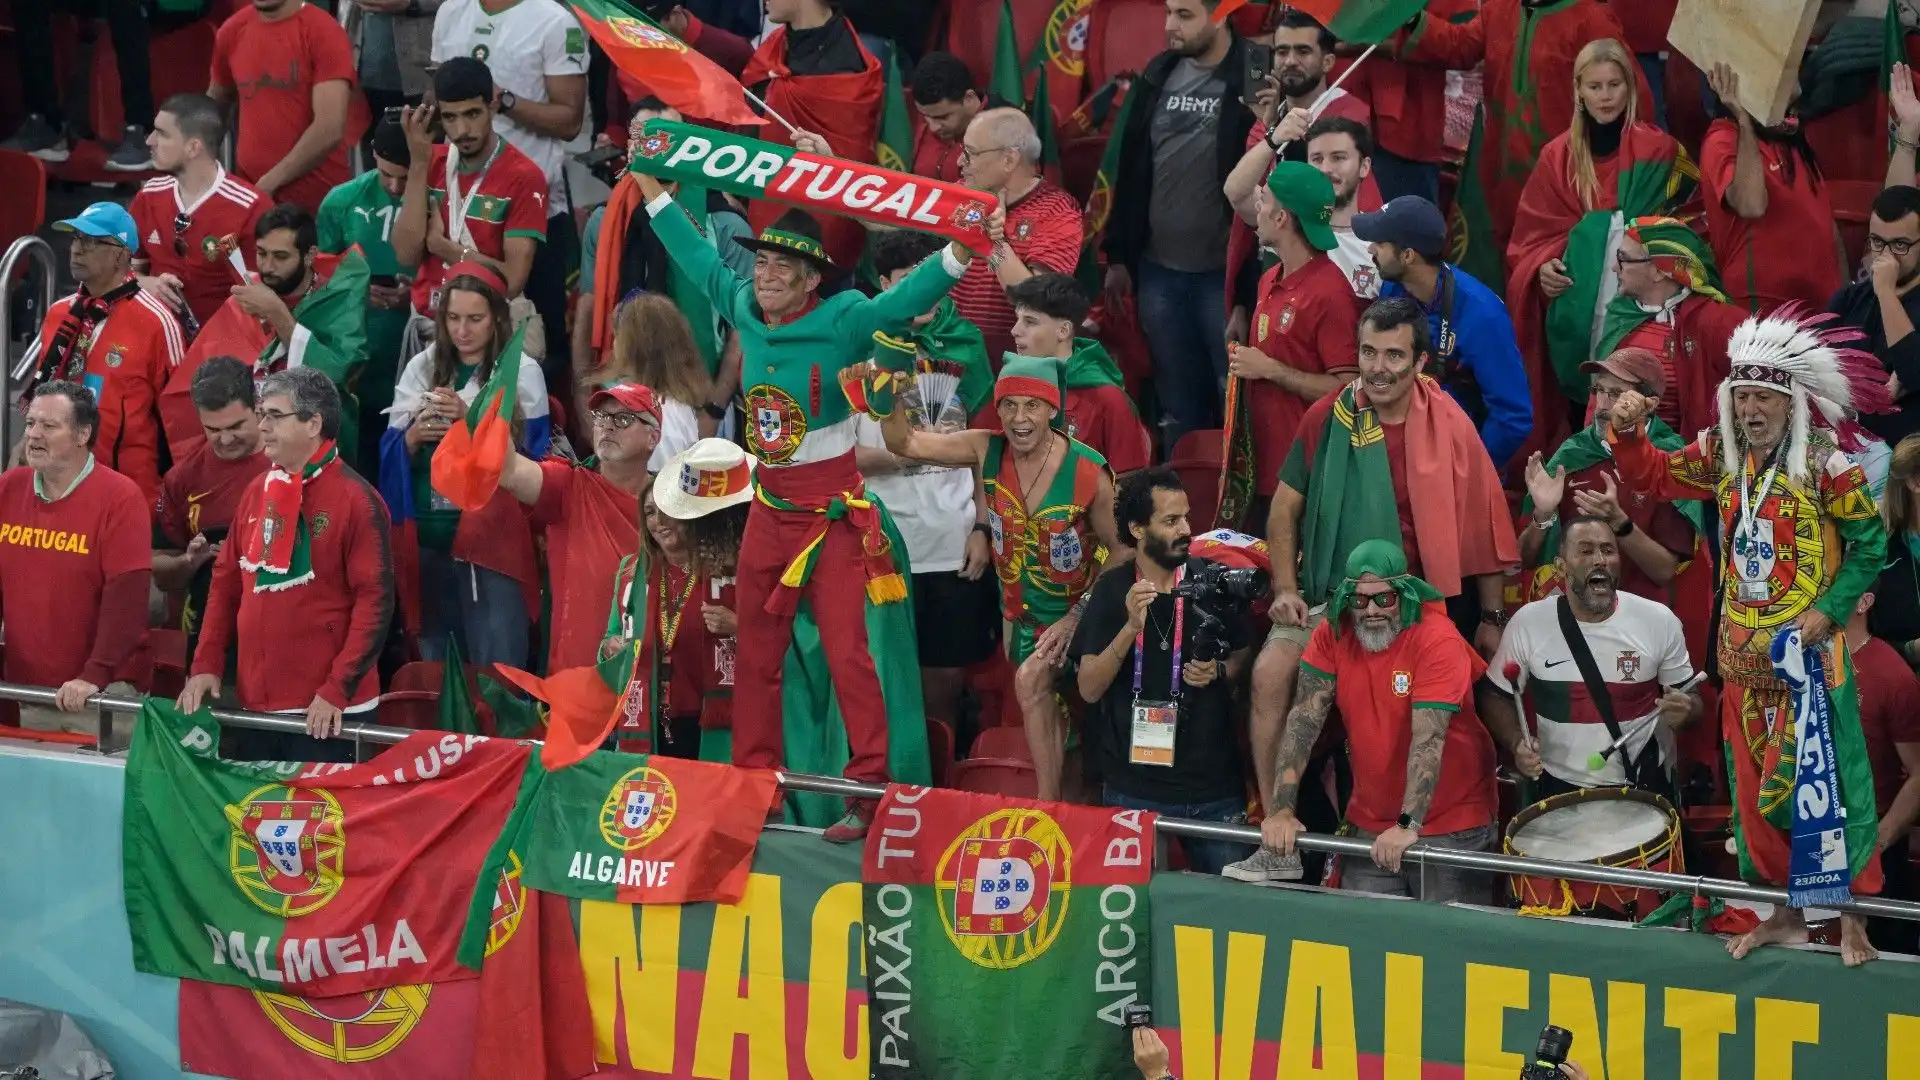 Ecco il settore dei supporter portoghesi